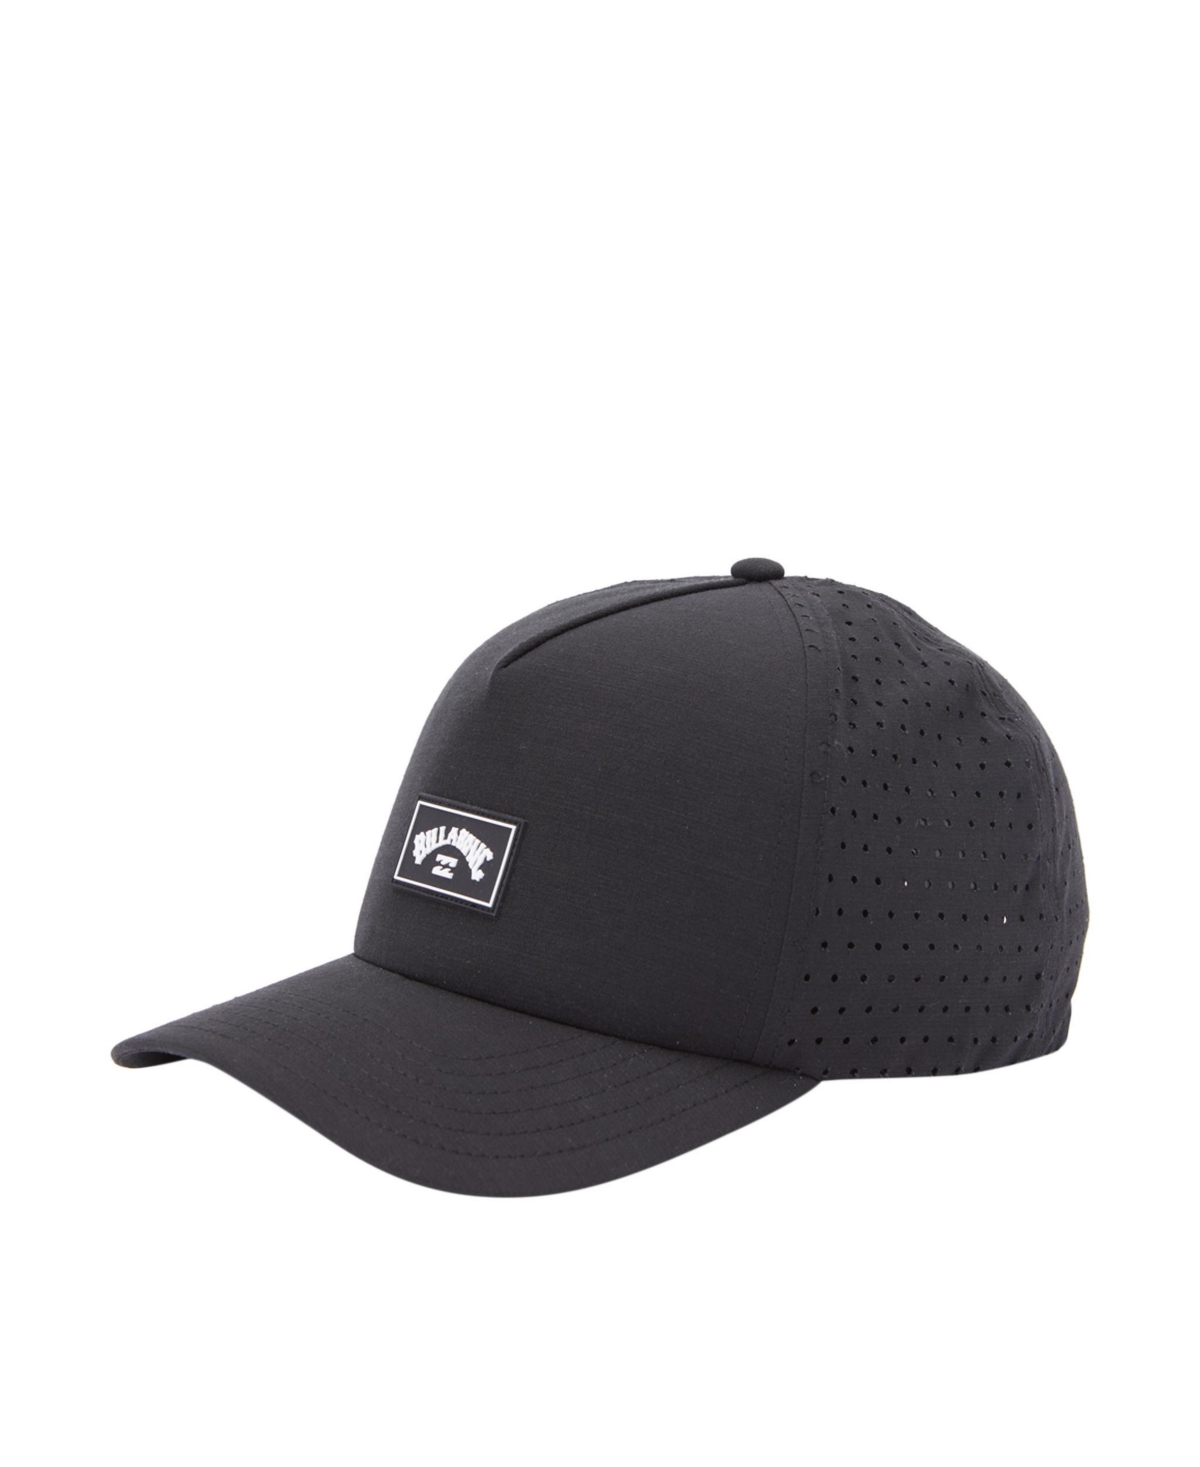 Men's Crossfire Snapback Trucker Headwear - Black